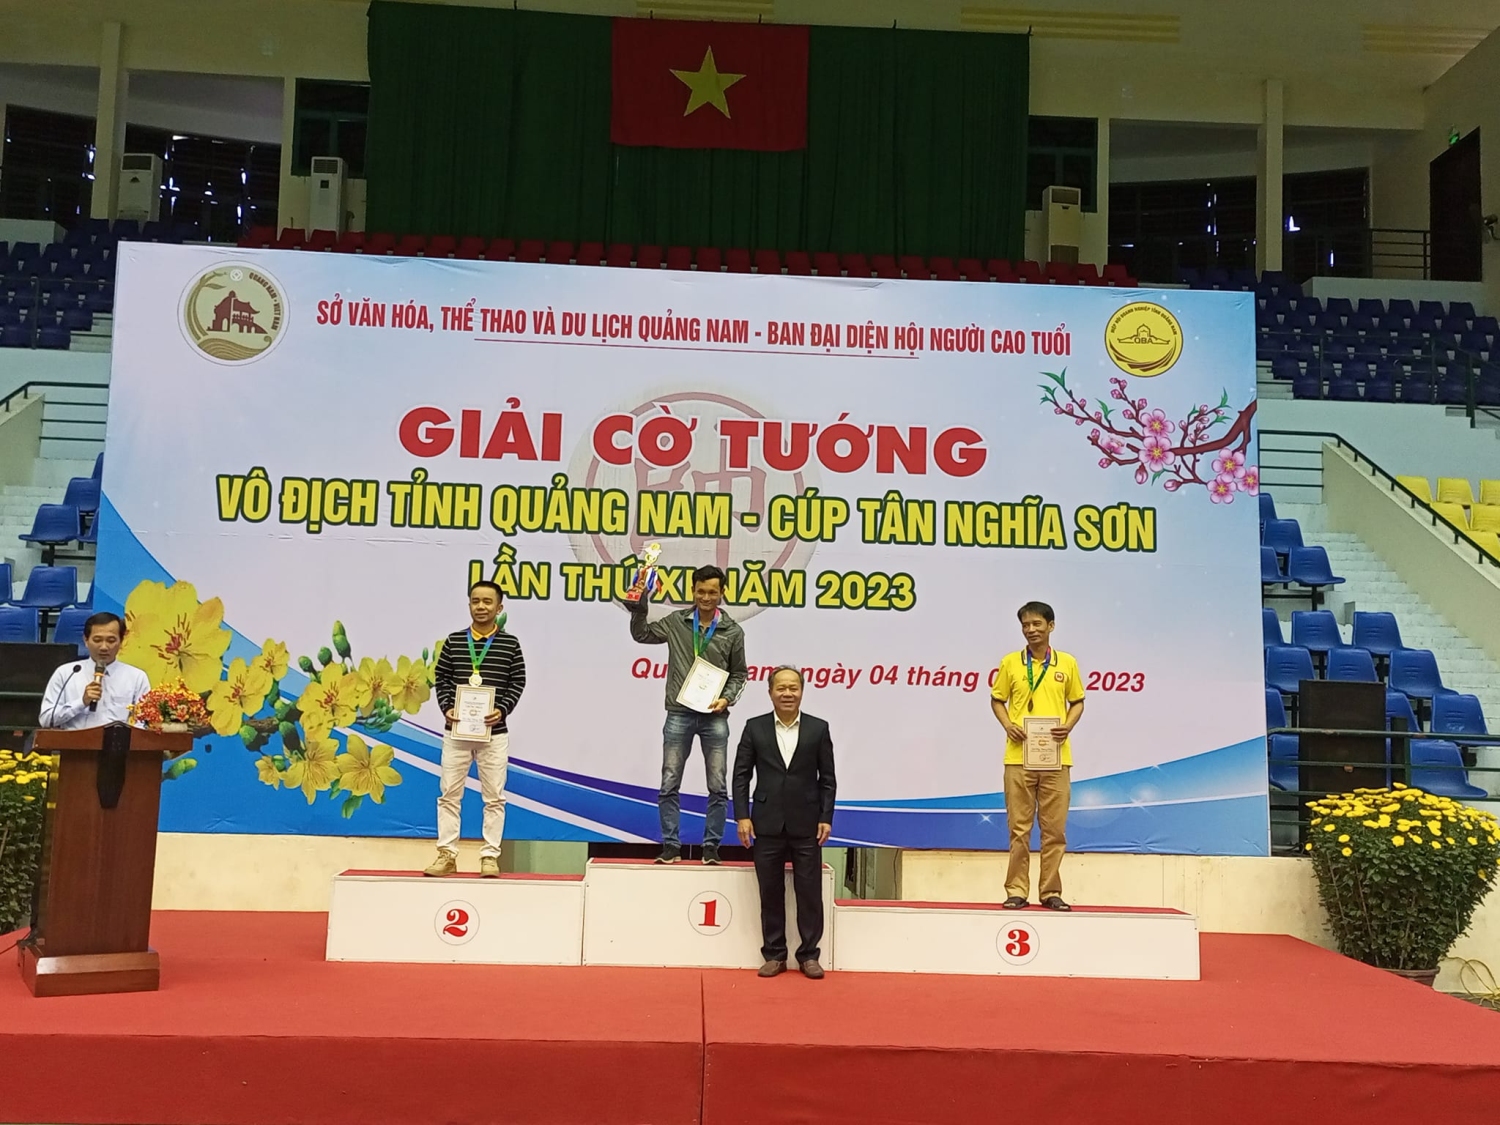 Giải vô địch Cờ tướng tỉnh Quảng Nam cúp Tân Nghĩa Sơn lần thứ XI năm 2023